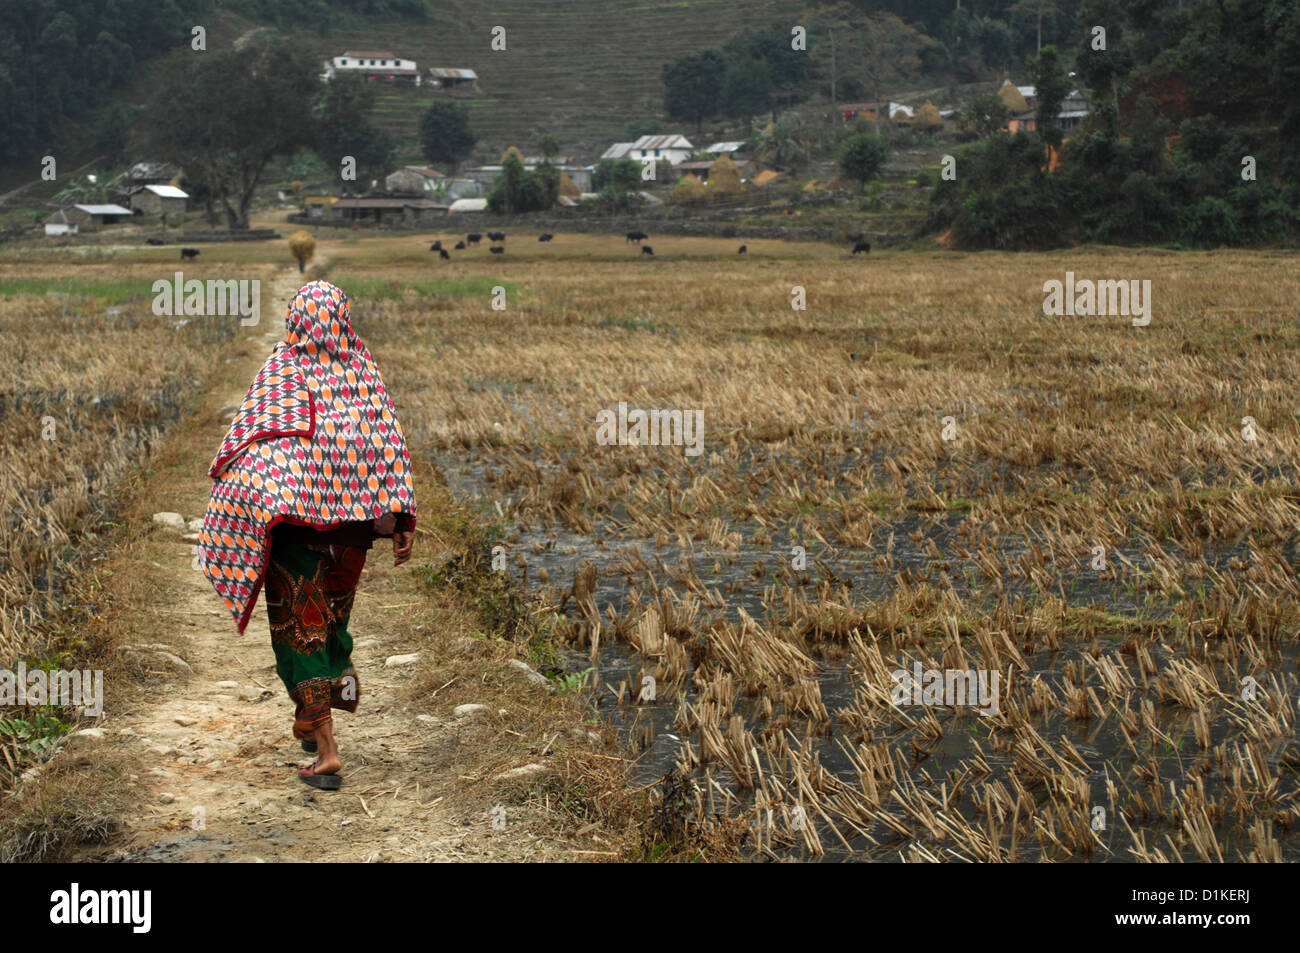 Une femme marche dans un champ récolté dans la région de village rural au Népal. Près de Fewa Tal dans Phokara, Népal Banque D'Images